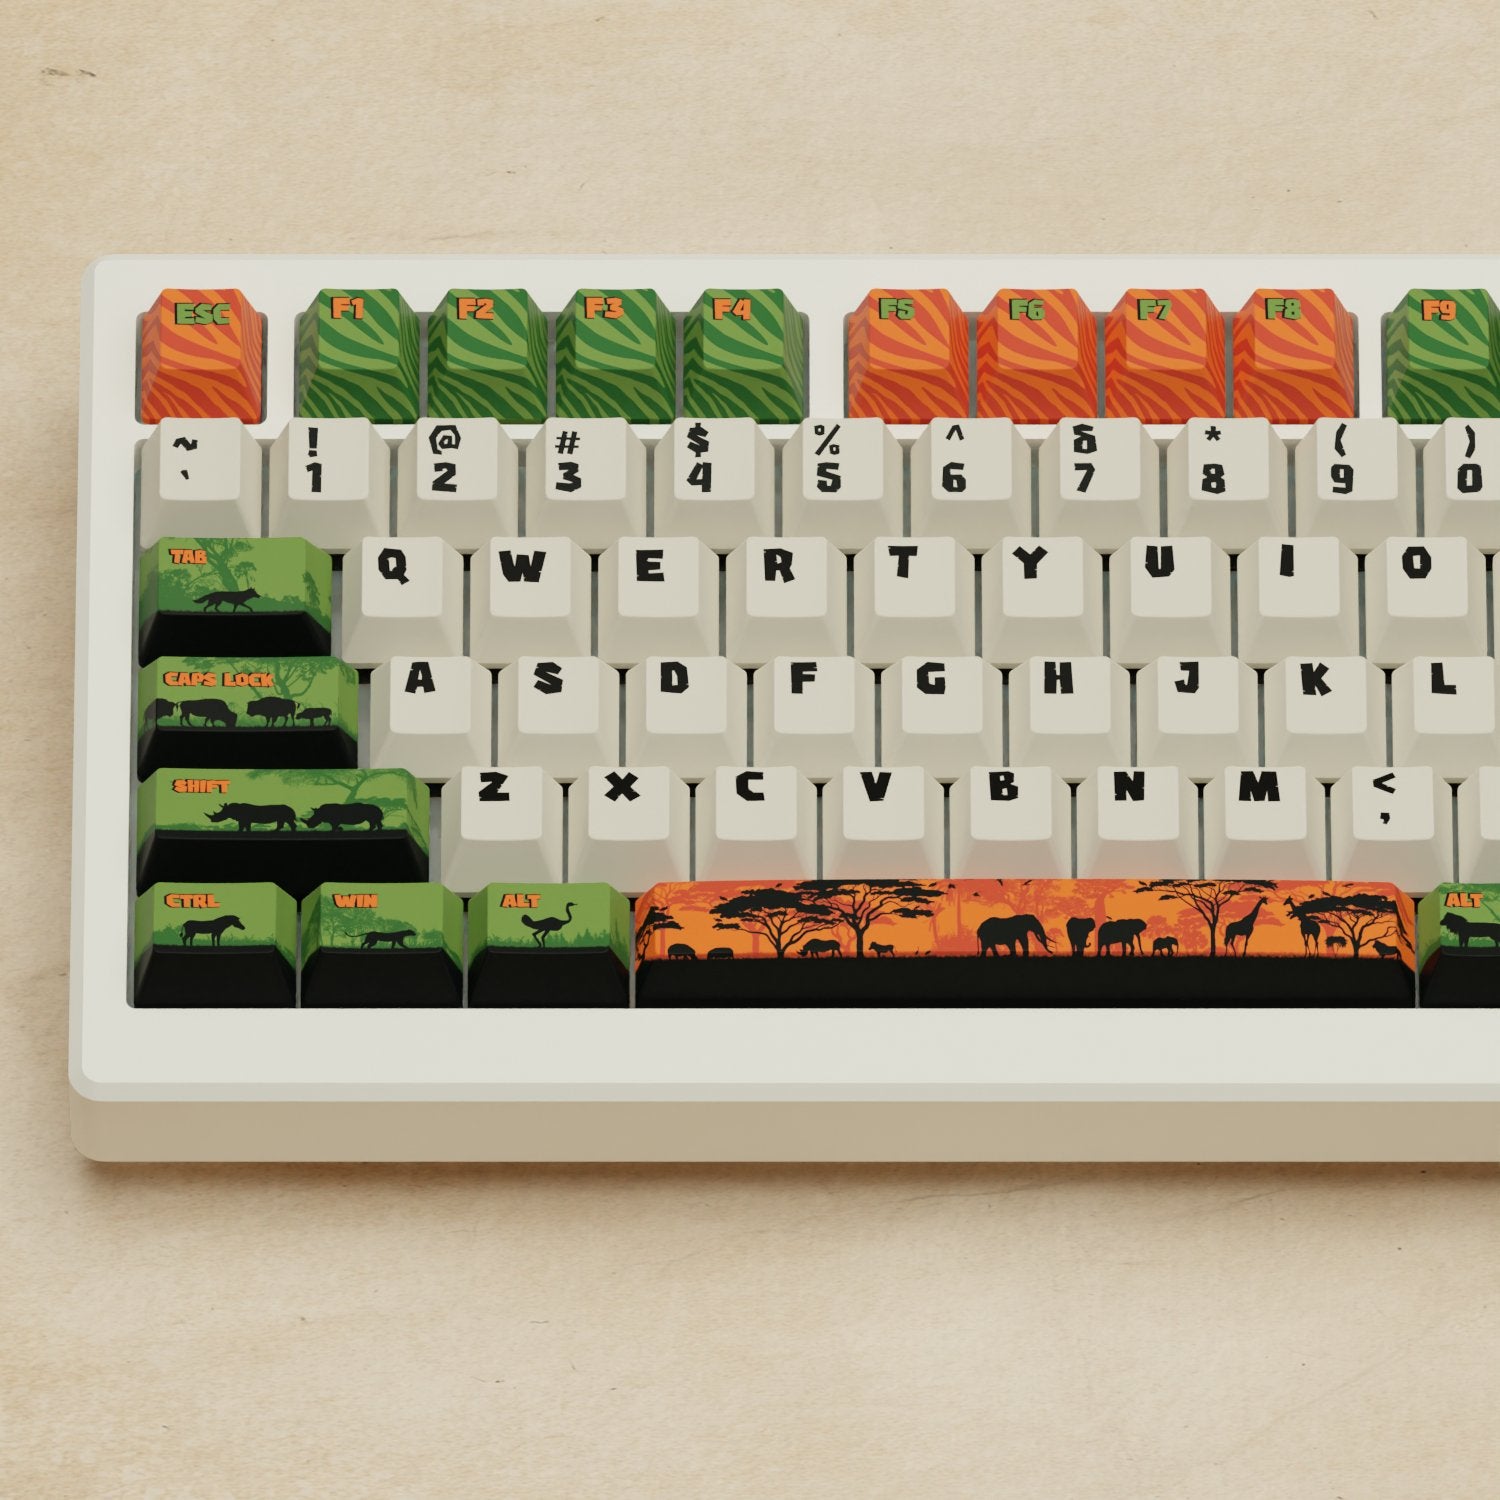 Alpha 82 - 75% Safari Mechanical Keyboard - Goblintechkeys